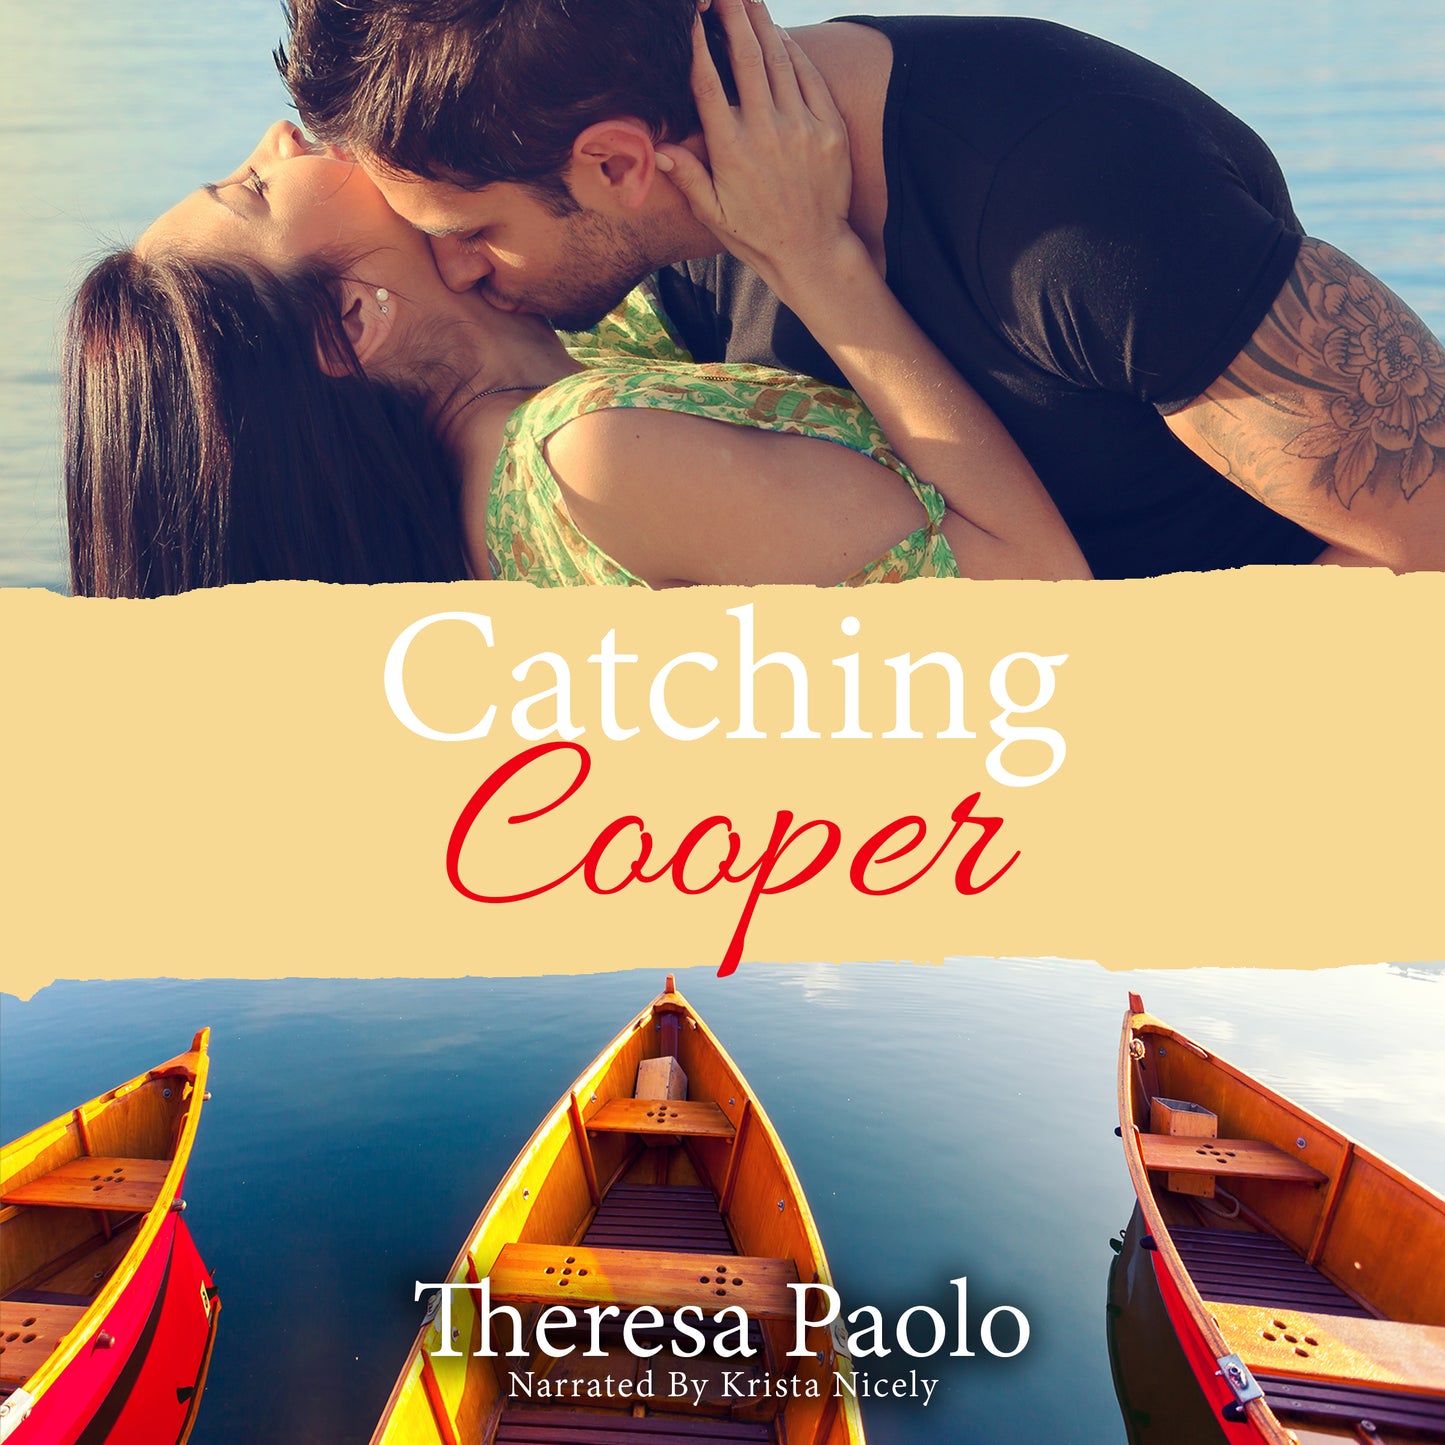 Catching Cooper Audiobook